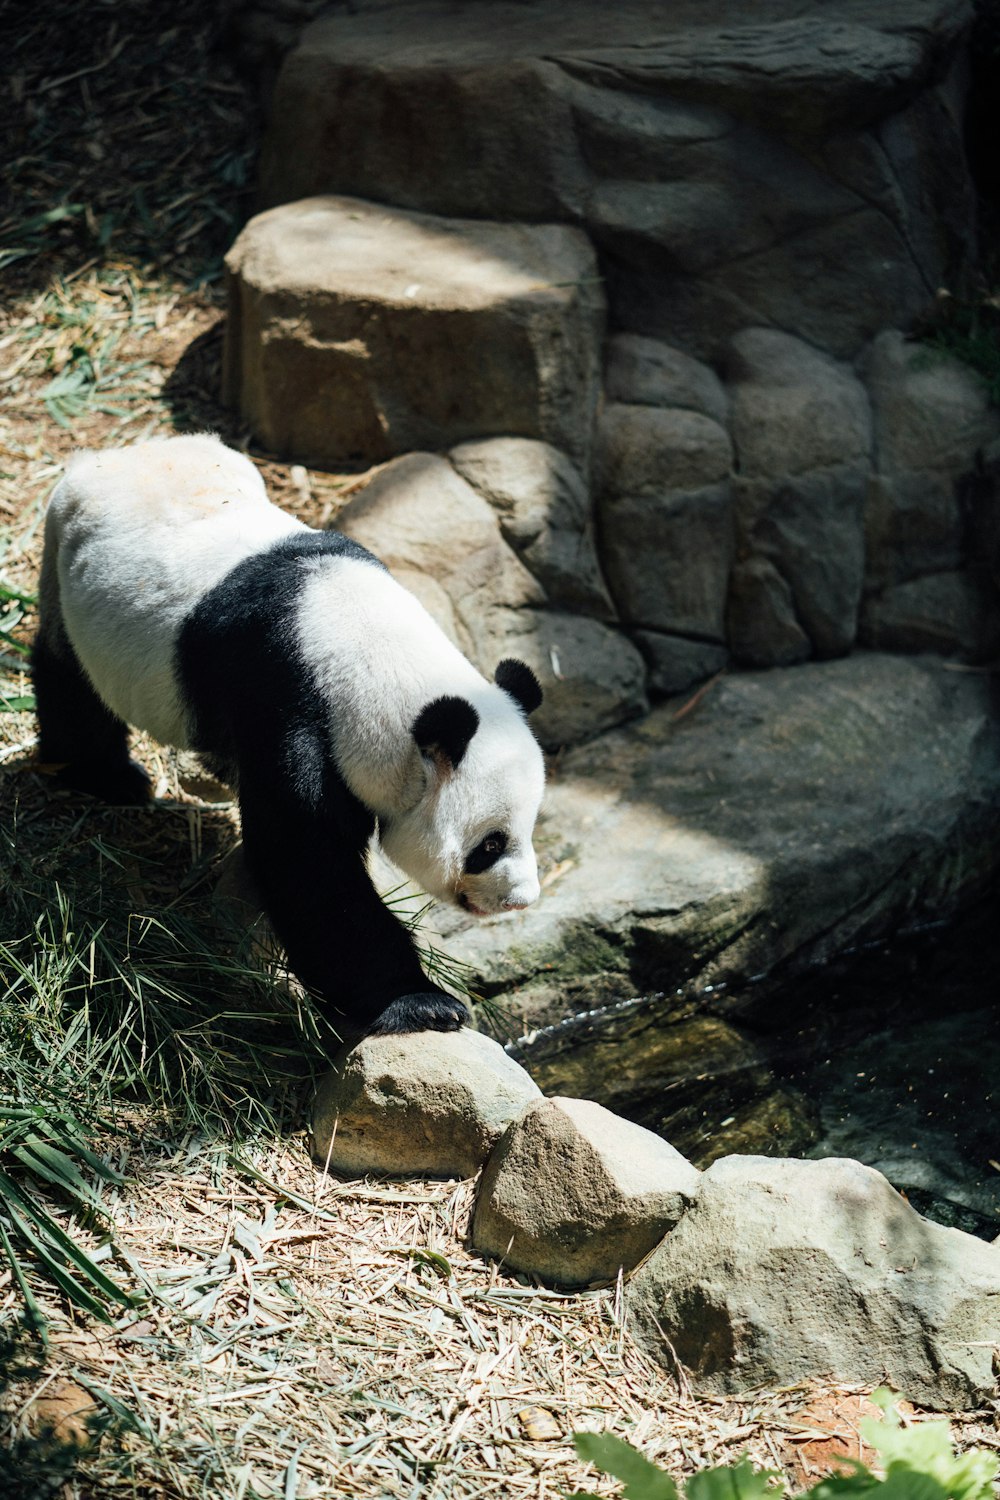 panda on rock formation during daytime